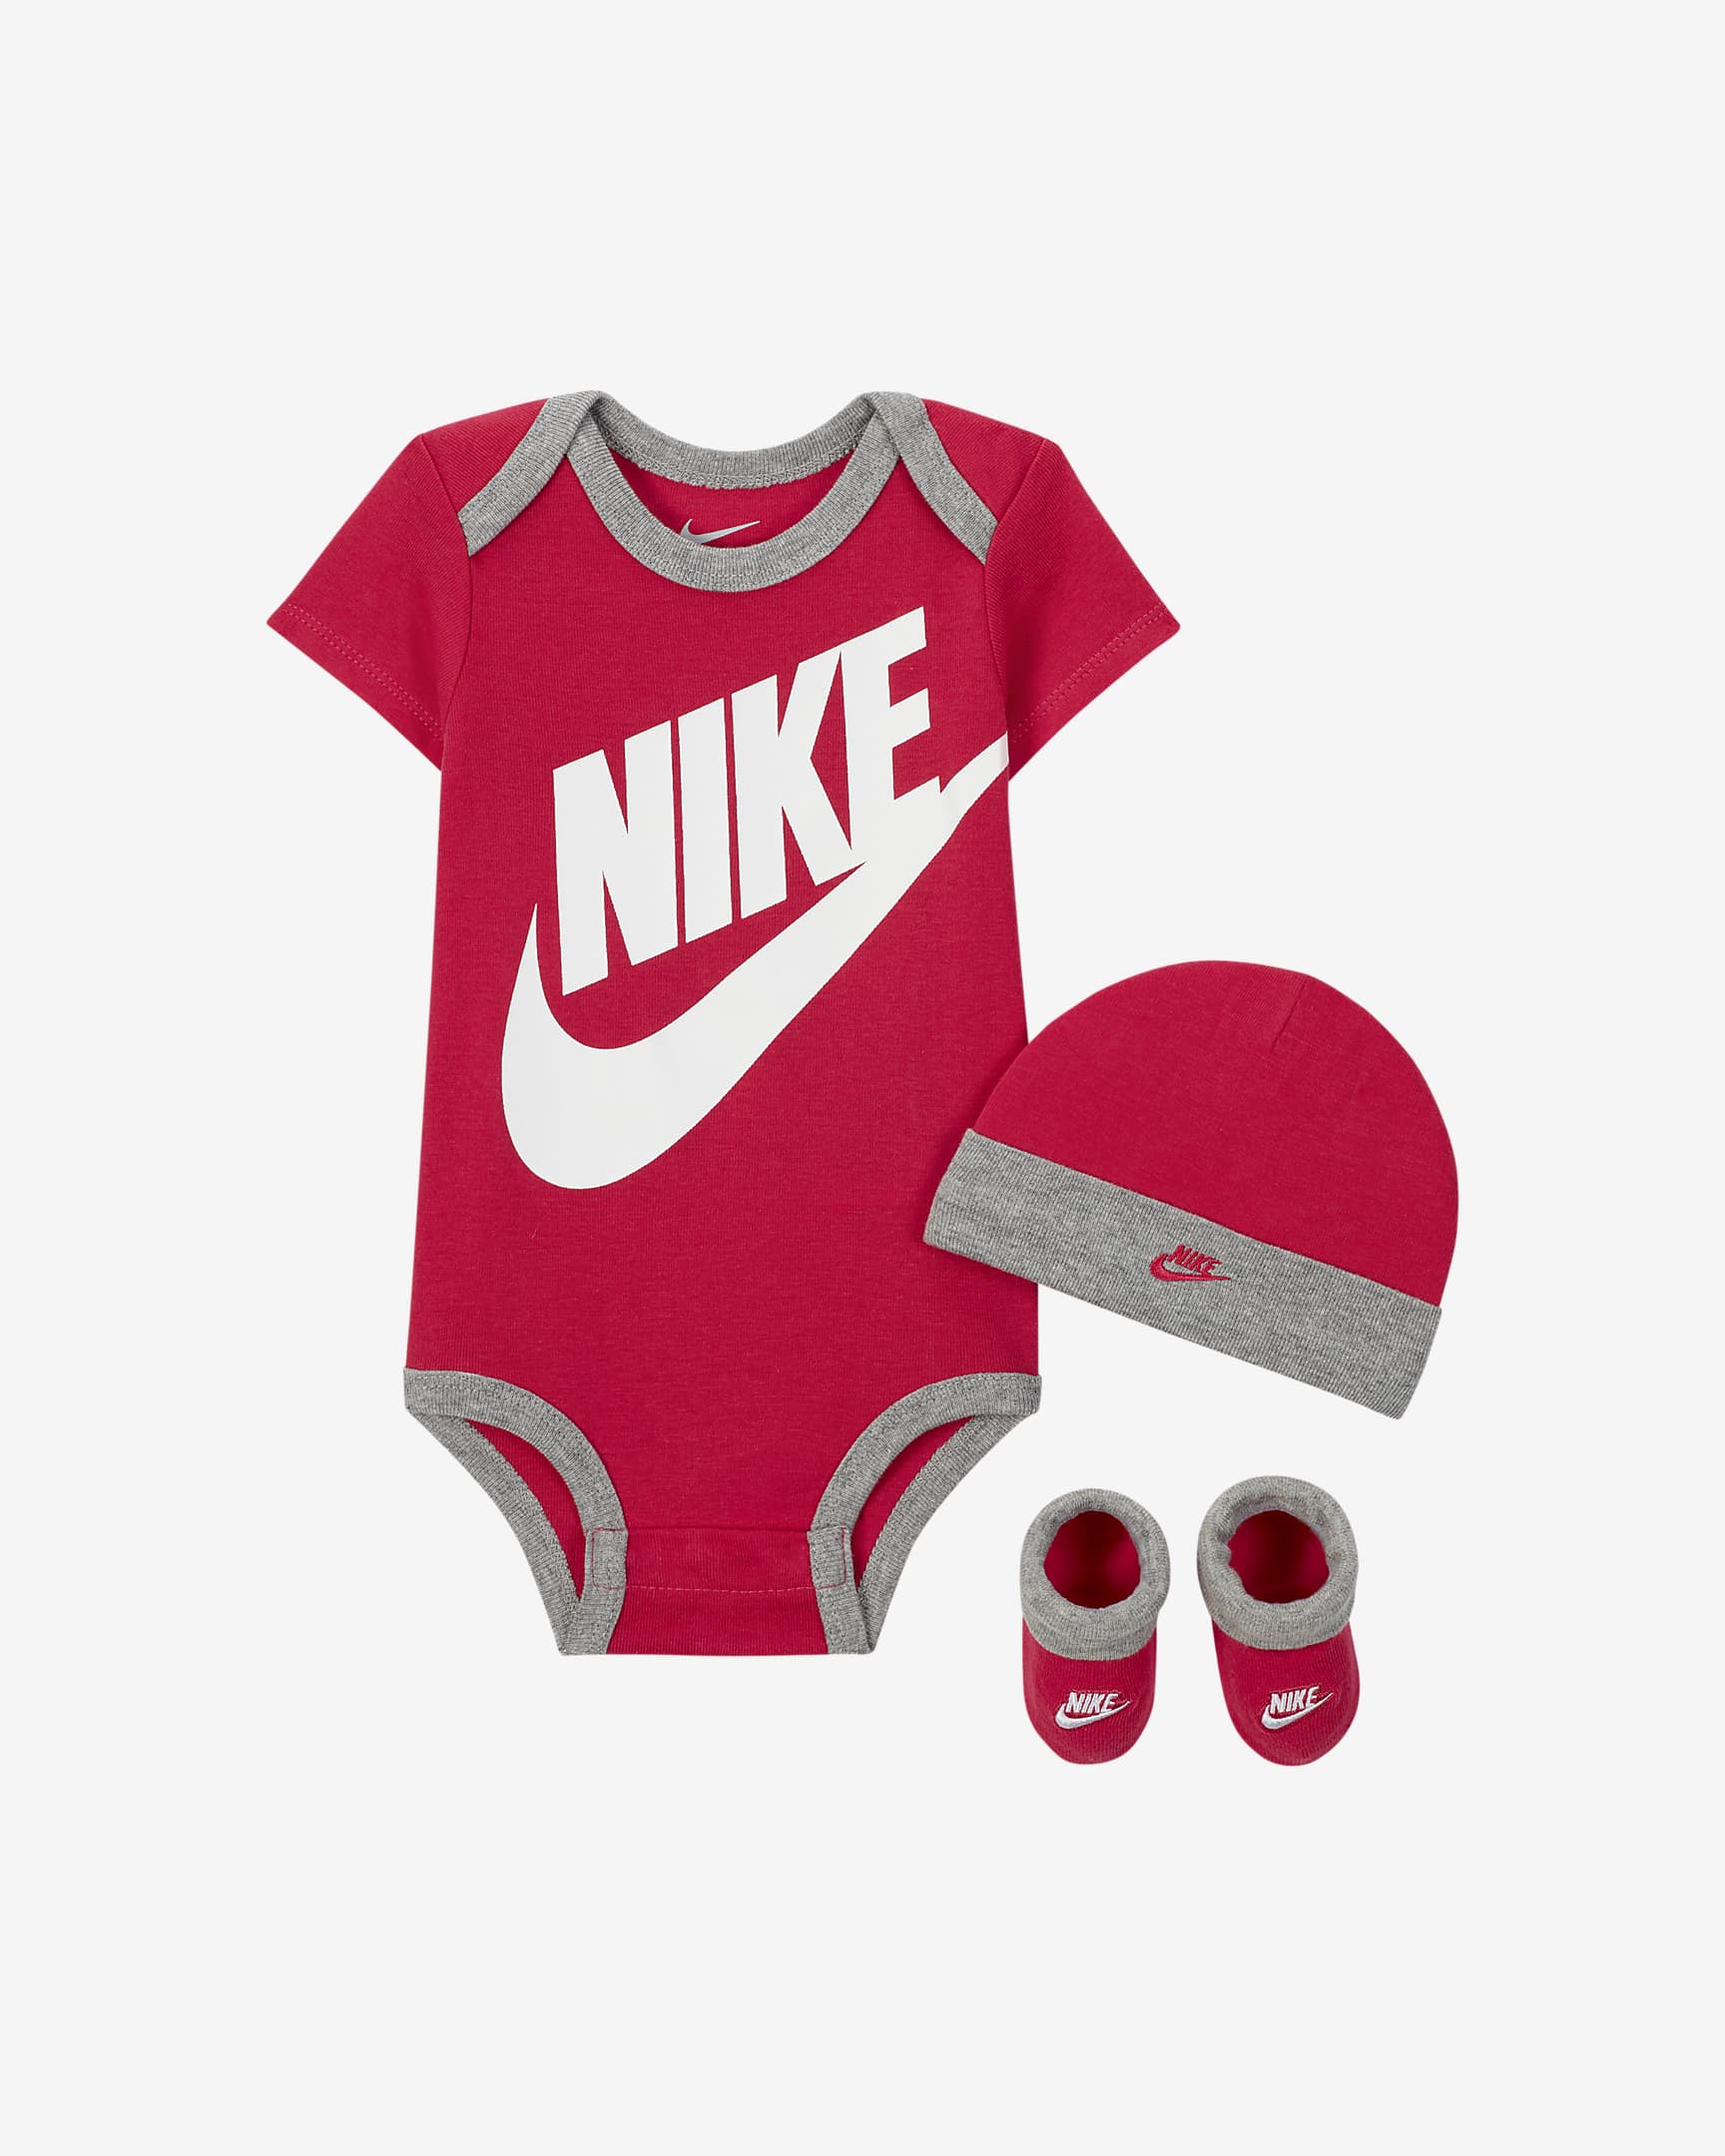 Kit Bonnet/ Gants Nike Futura Junior- Rose/Noir – Footkorner